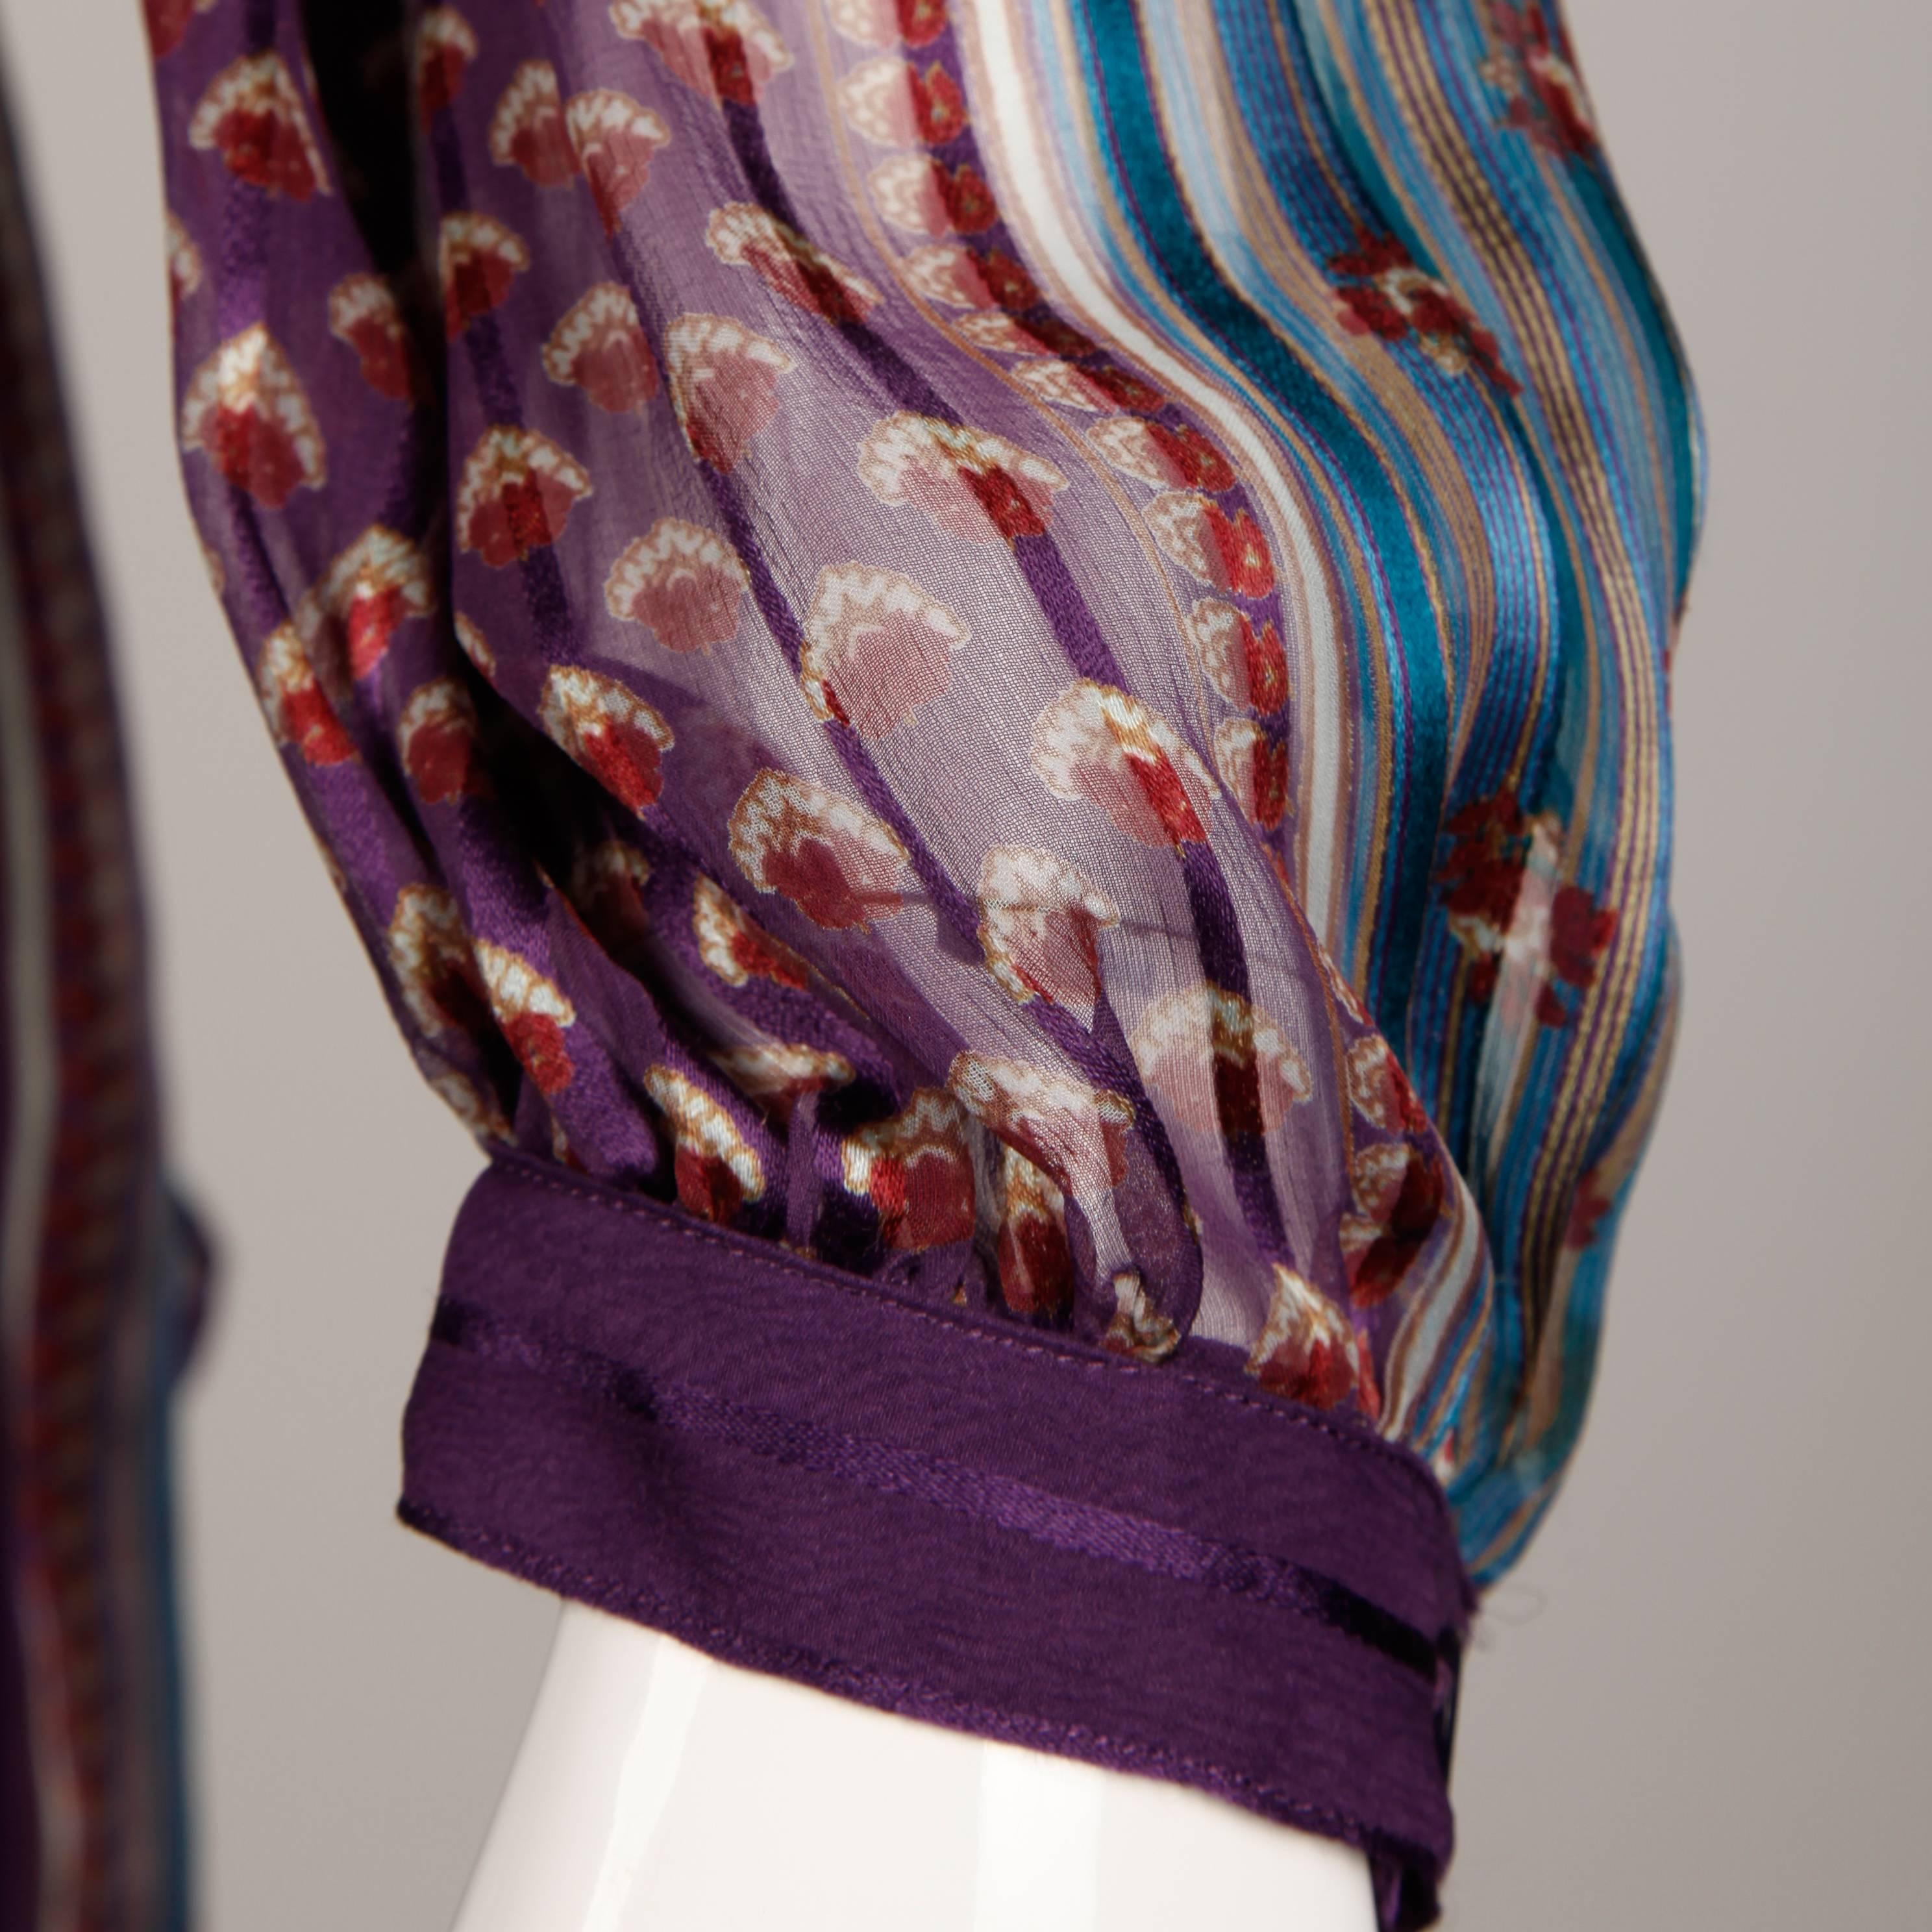 Superbe robe vintage des années 1970 en soie fine imprimée en Inde par The Silk Farm. Non doublée, avec un slip en soie violette détaché (non illustré) et une fermeture par bouton à l'arrière. 100% soie. La taille indiquée est 12, mais la robe